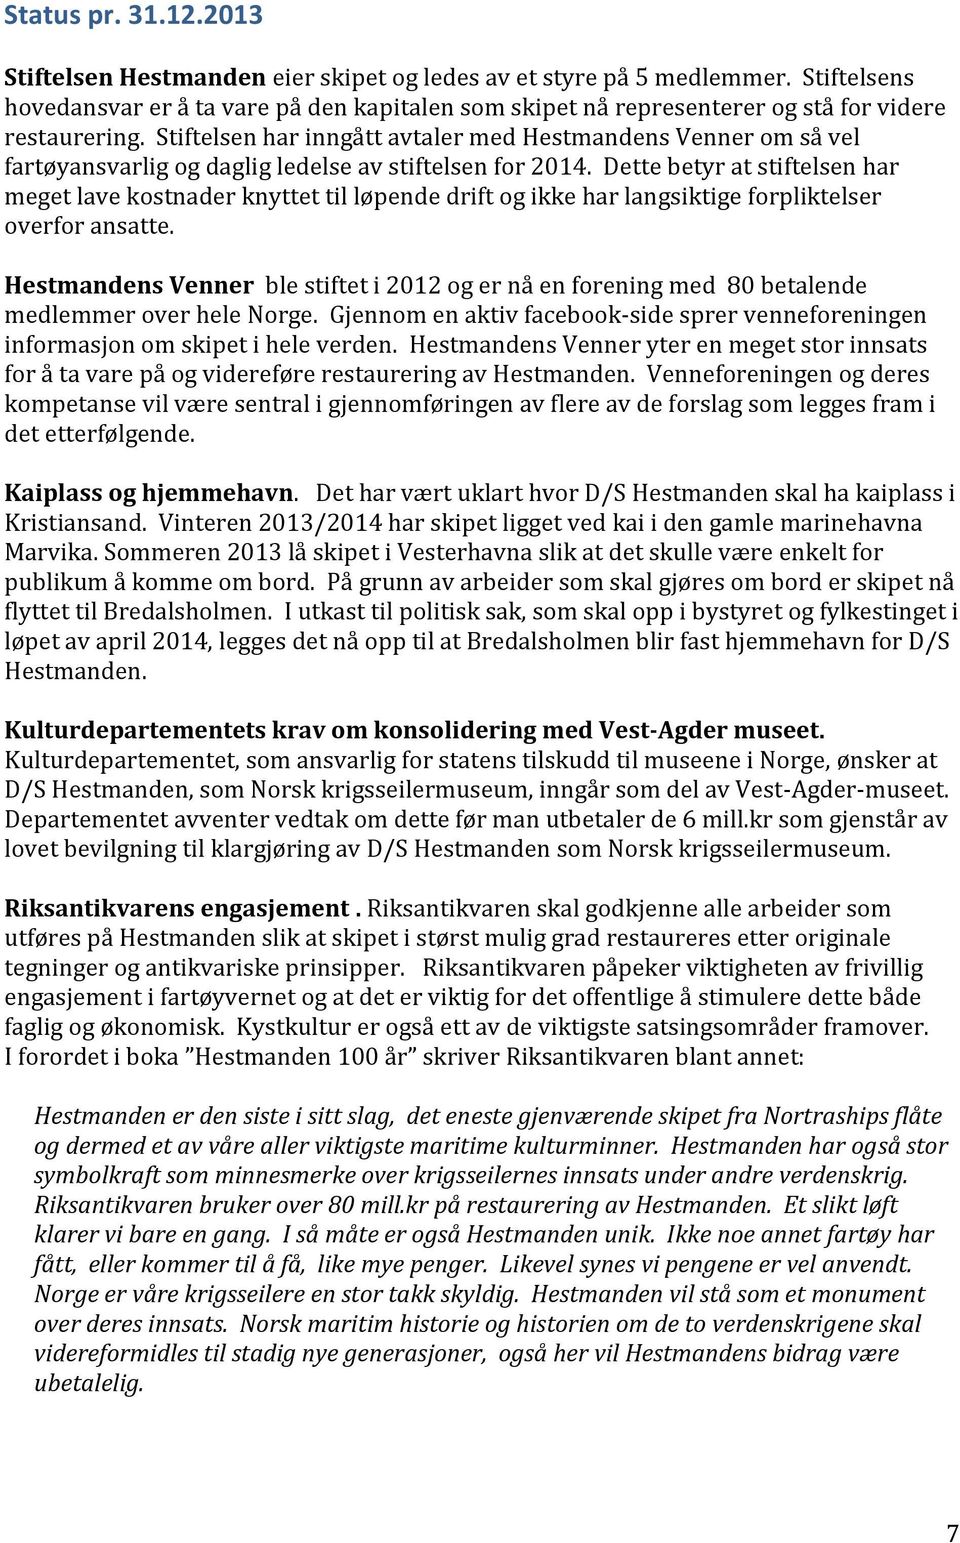 Stiftelsen har inngått avtaler med Hestmandens Venner om så vel fartøyansvarlig og daglig ledelse av stiftelsen for 2014.